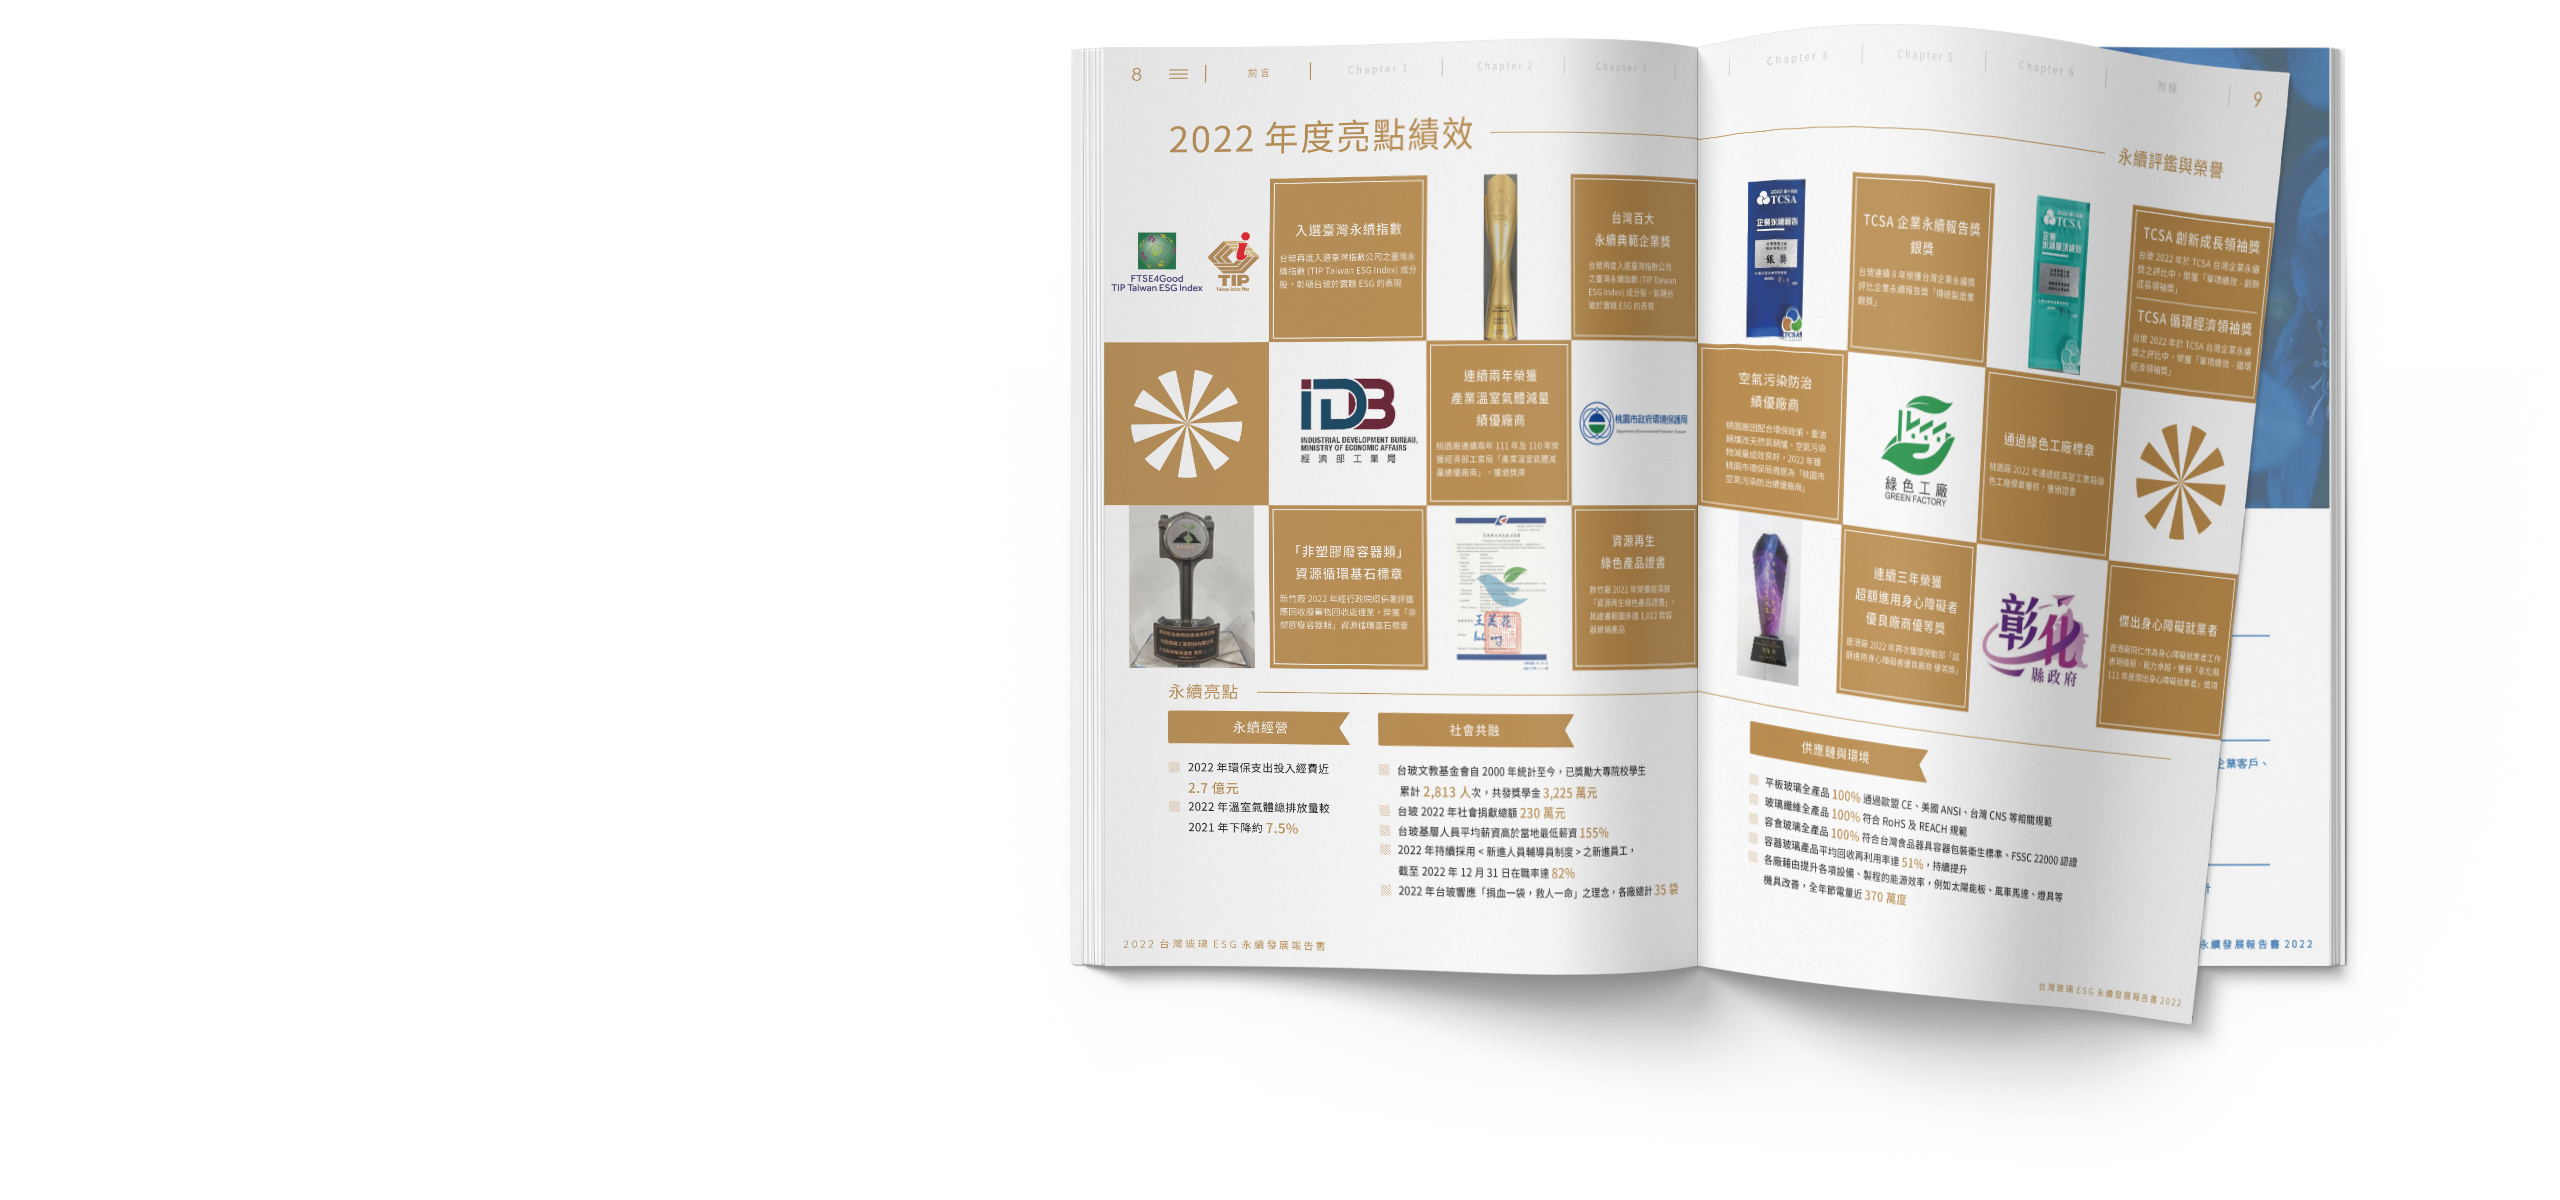 台灣玻璃 2022 ESG 永續報告書 美編排版設計 電腦版(3)